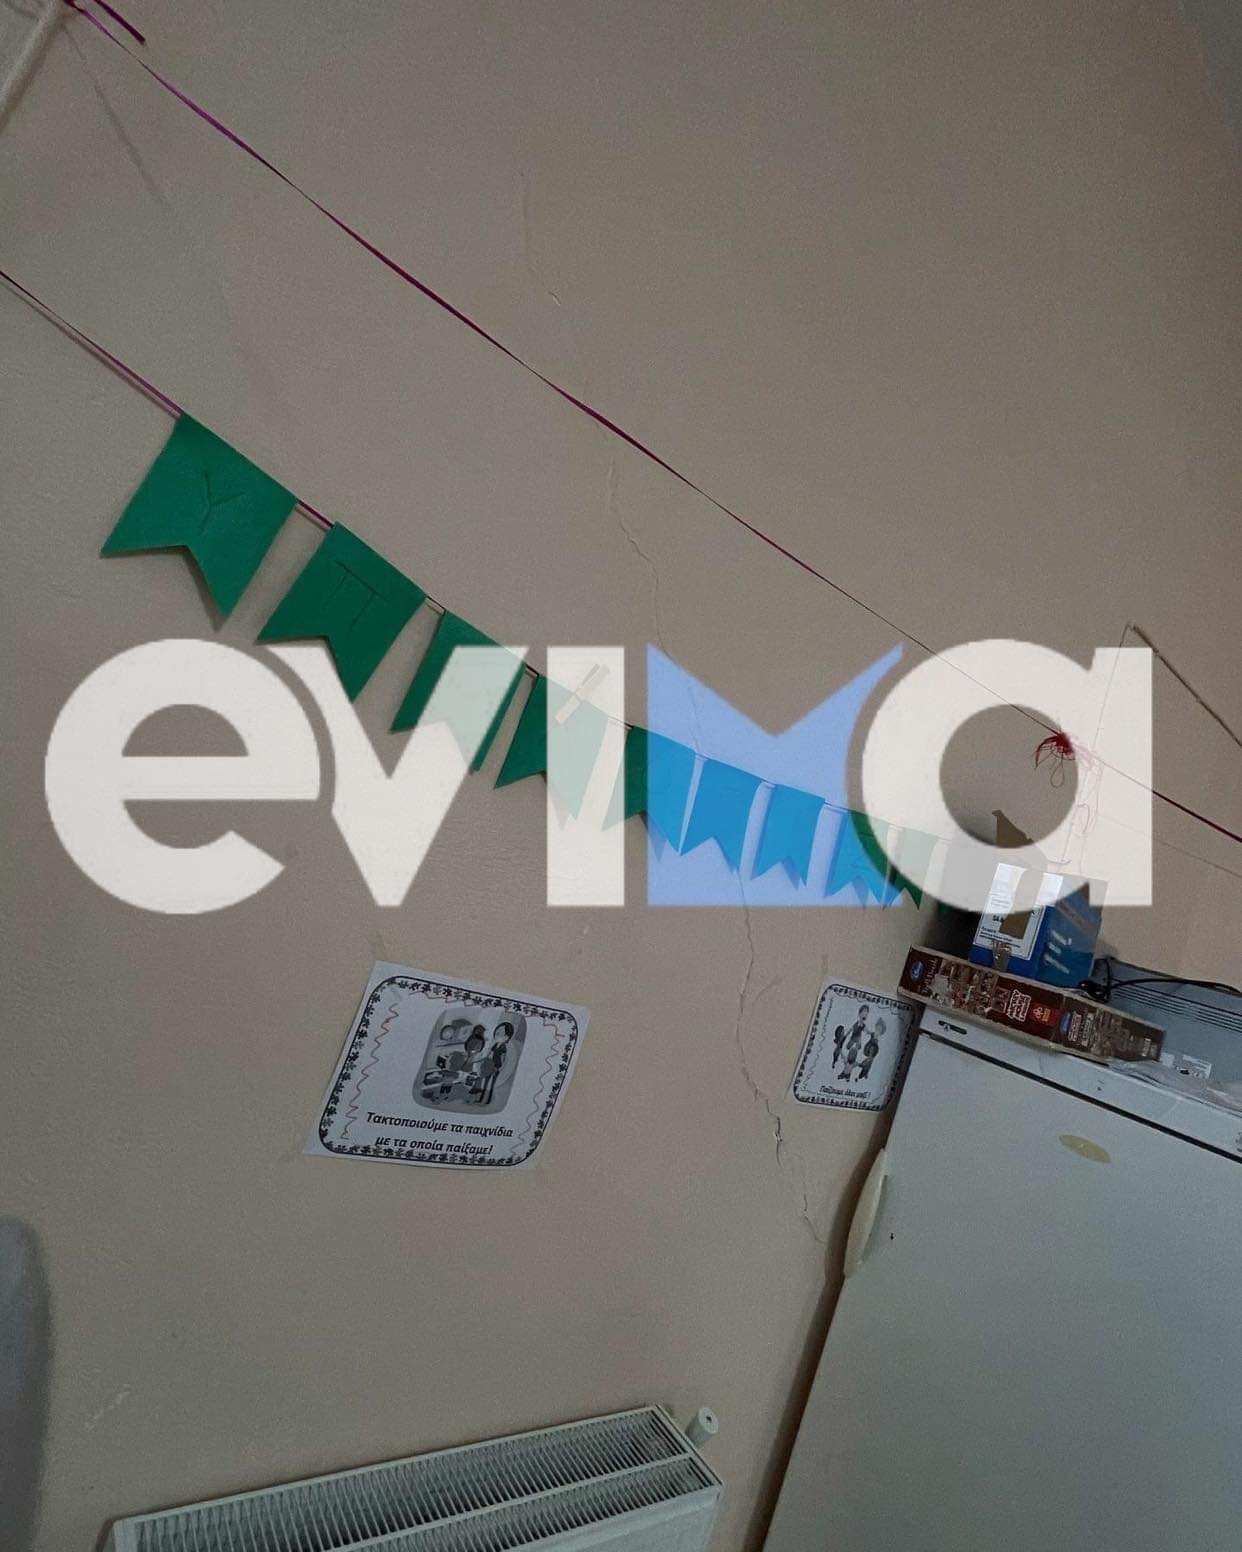 Σεισμός στην Εύβοια: Zημιές σε σπίτια και σχολεία